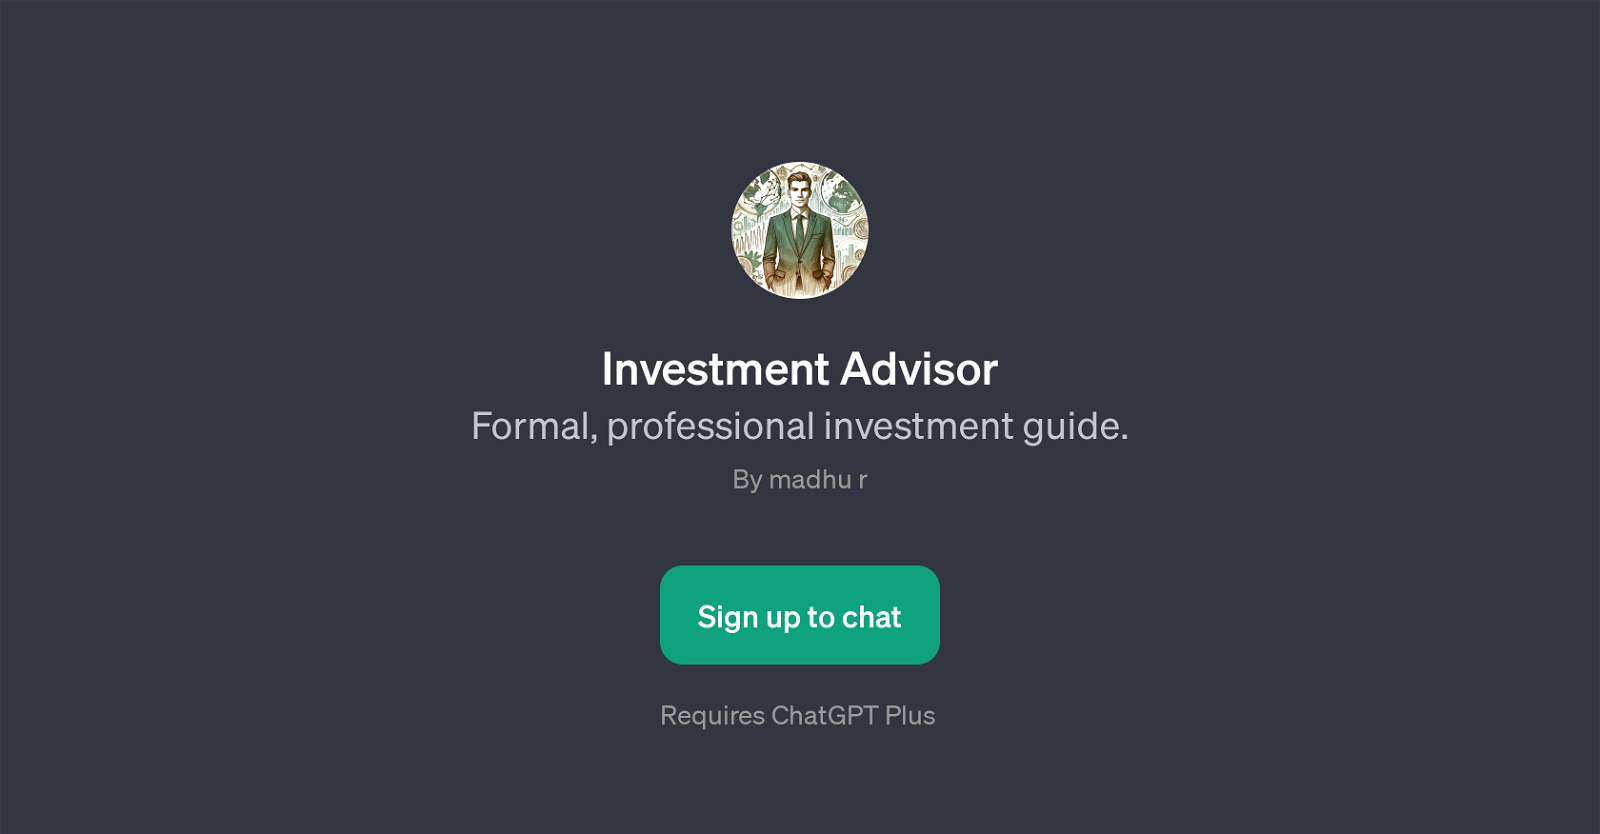 Investment Advisor website